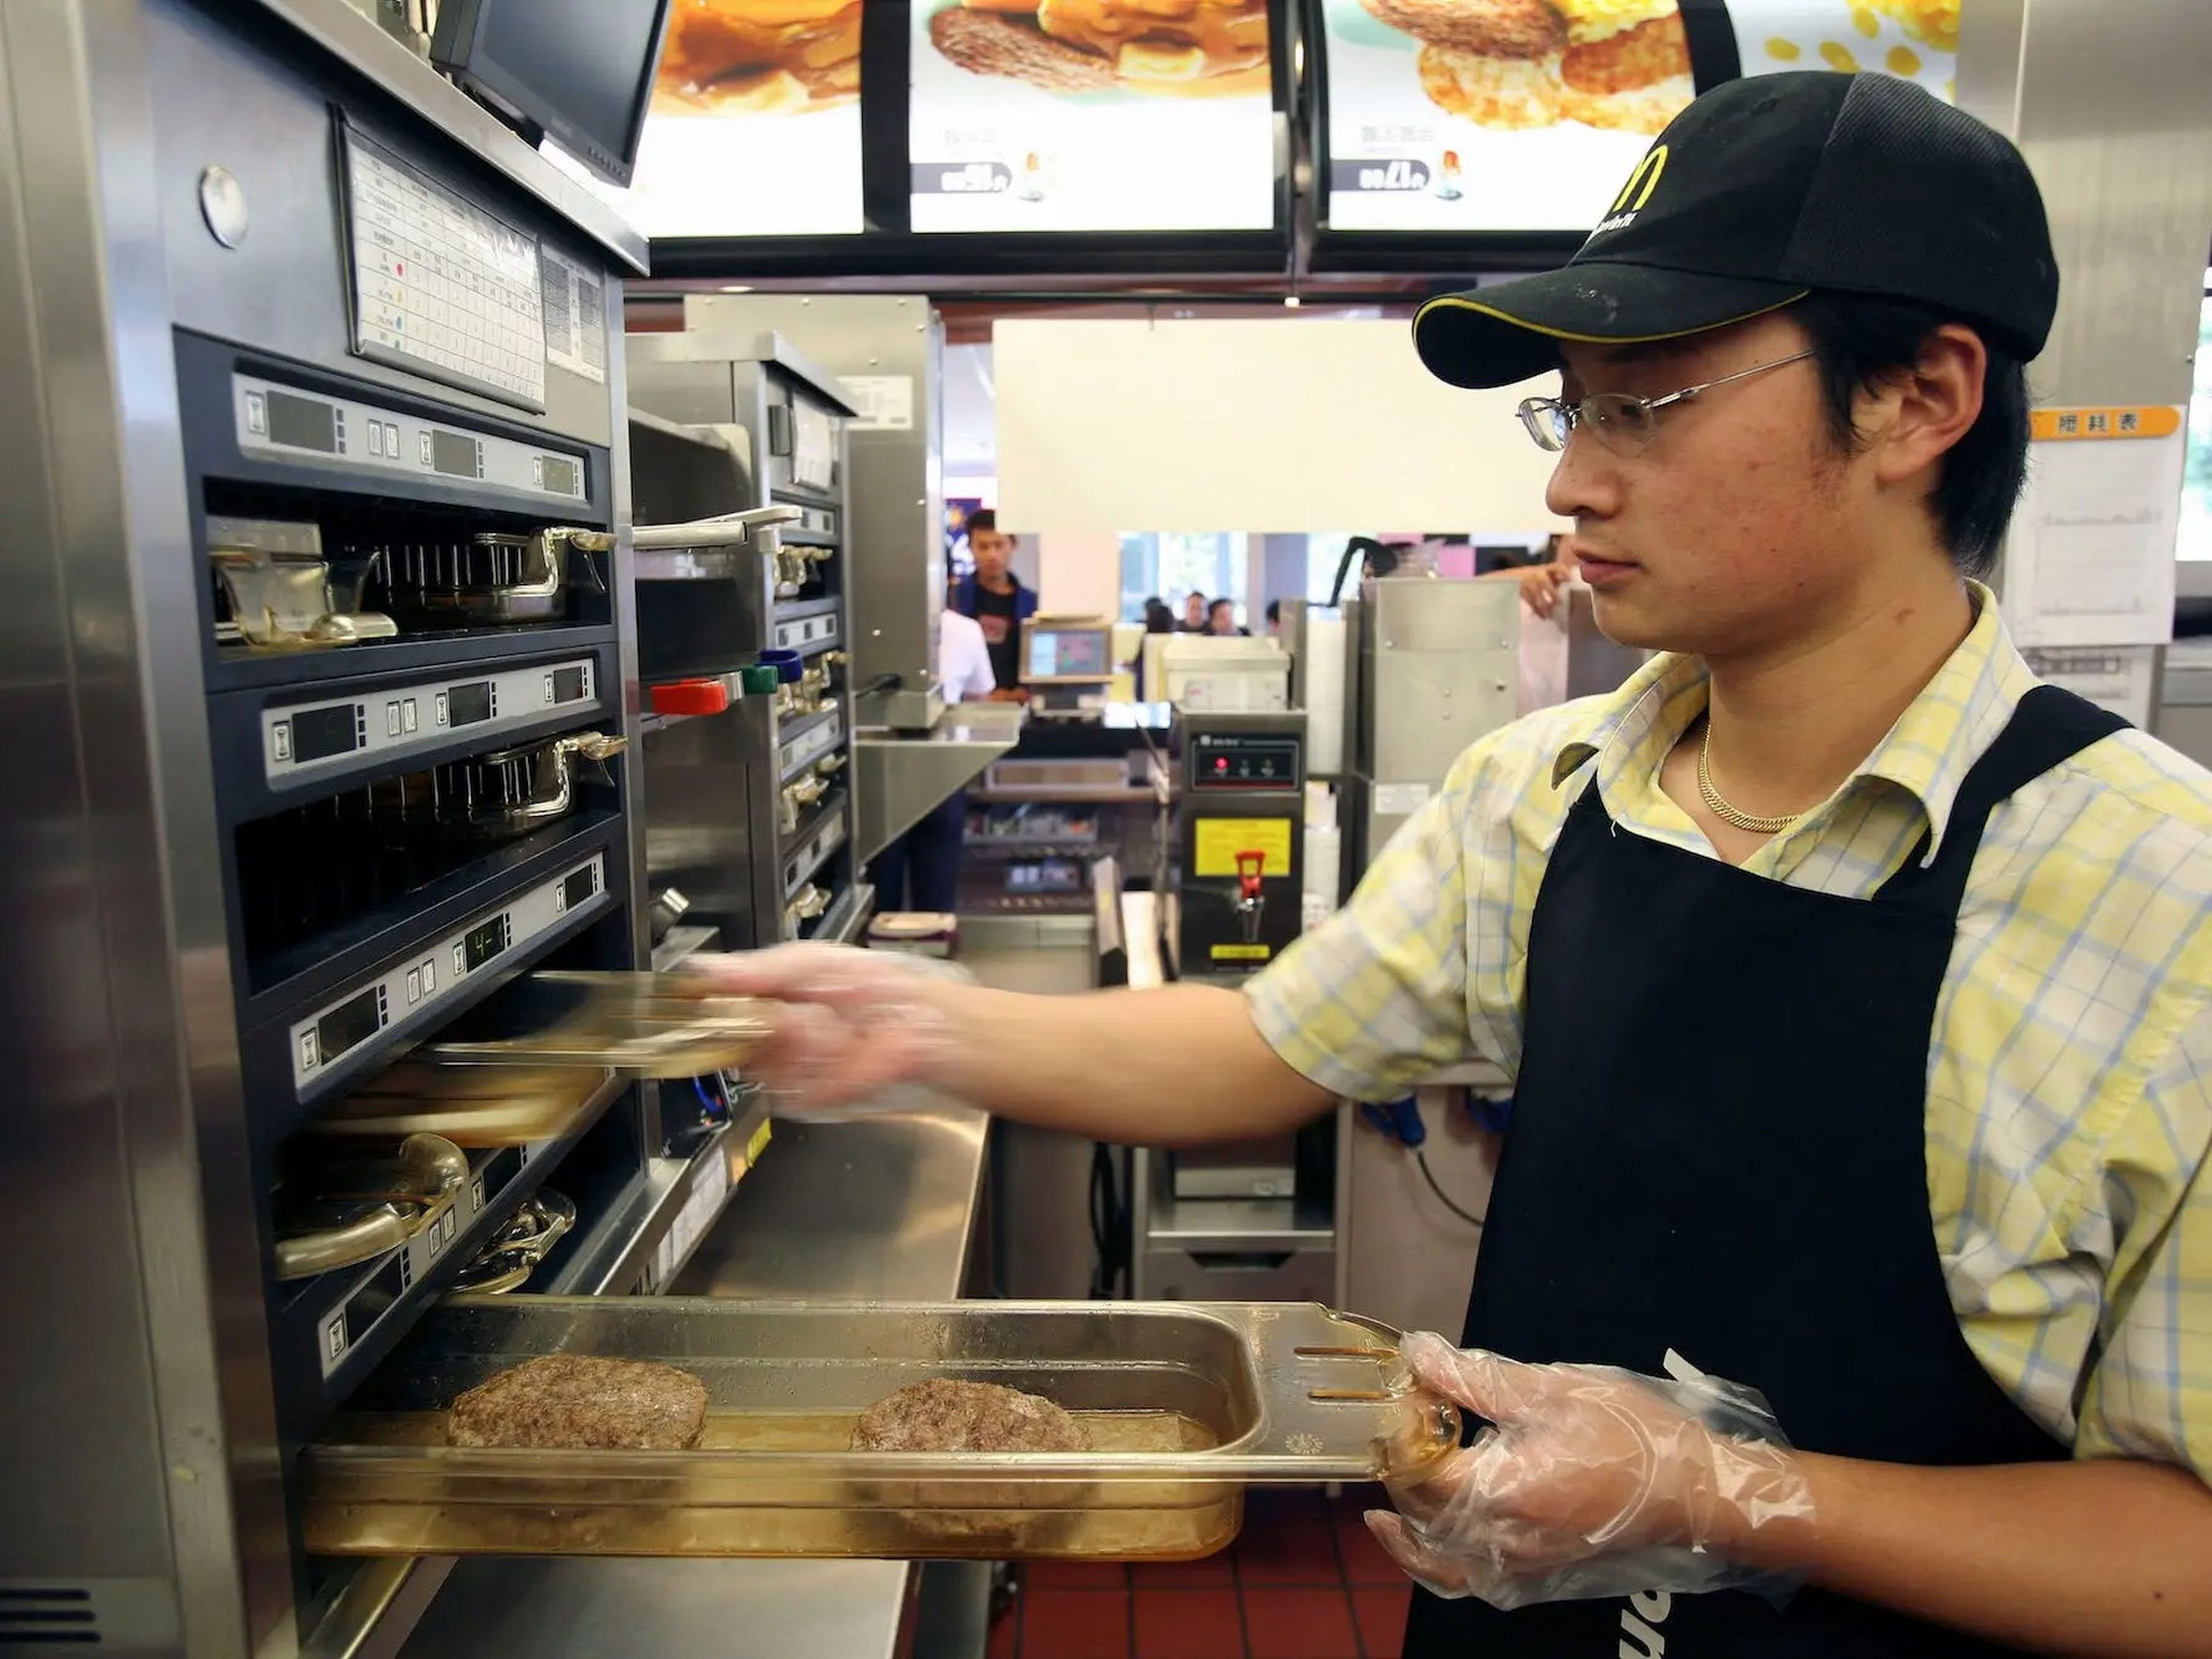 Un empleado de McDonald's preparando hamburguesas.